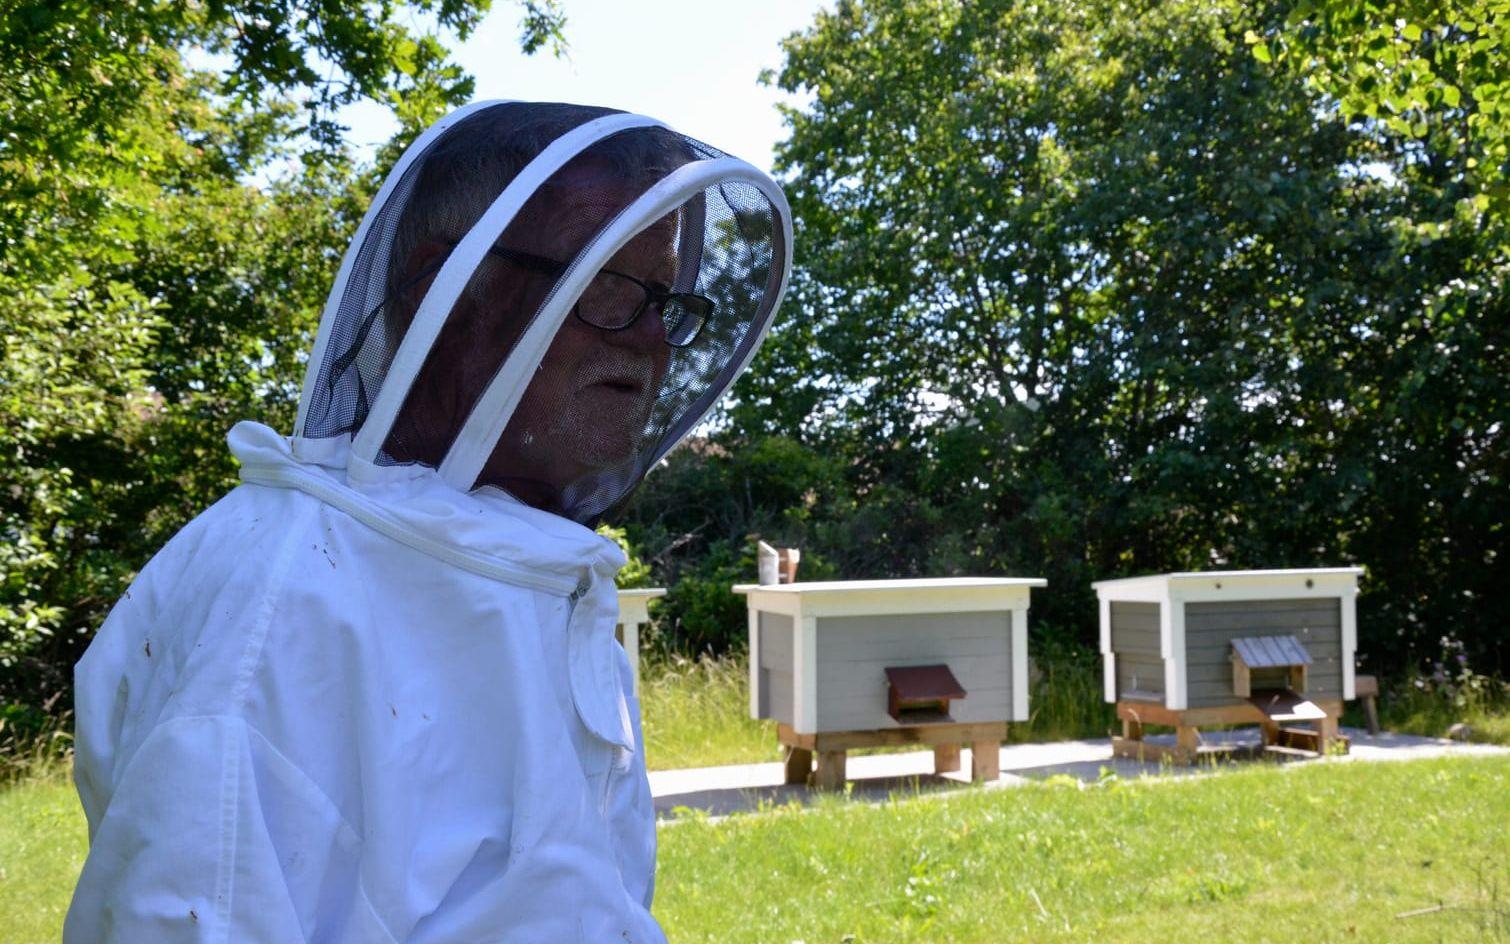 Biodlare. Jan Vastersson ser till kuporna nästan dagligen för att kolla till bina och ta hand om honungen de producerar. Bild: Carolin Gadallah